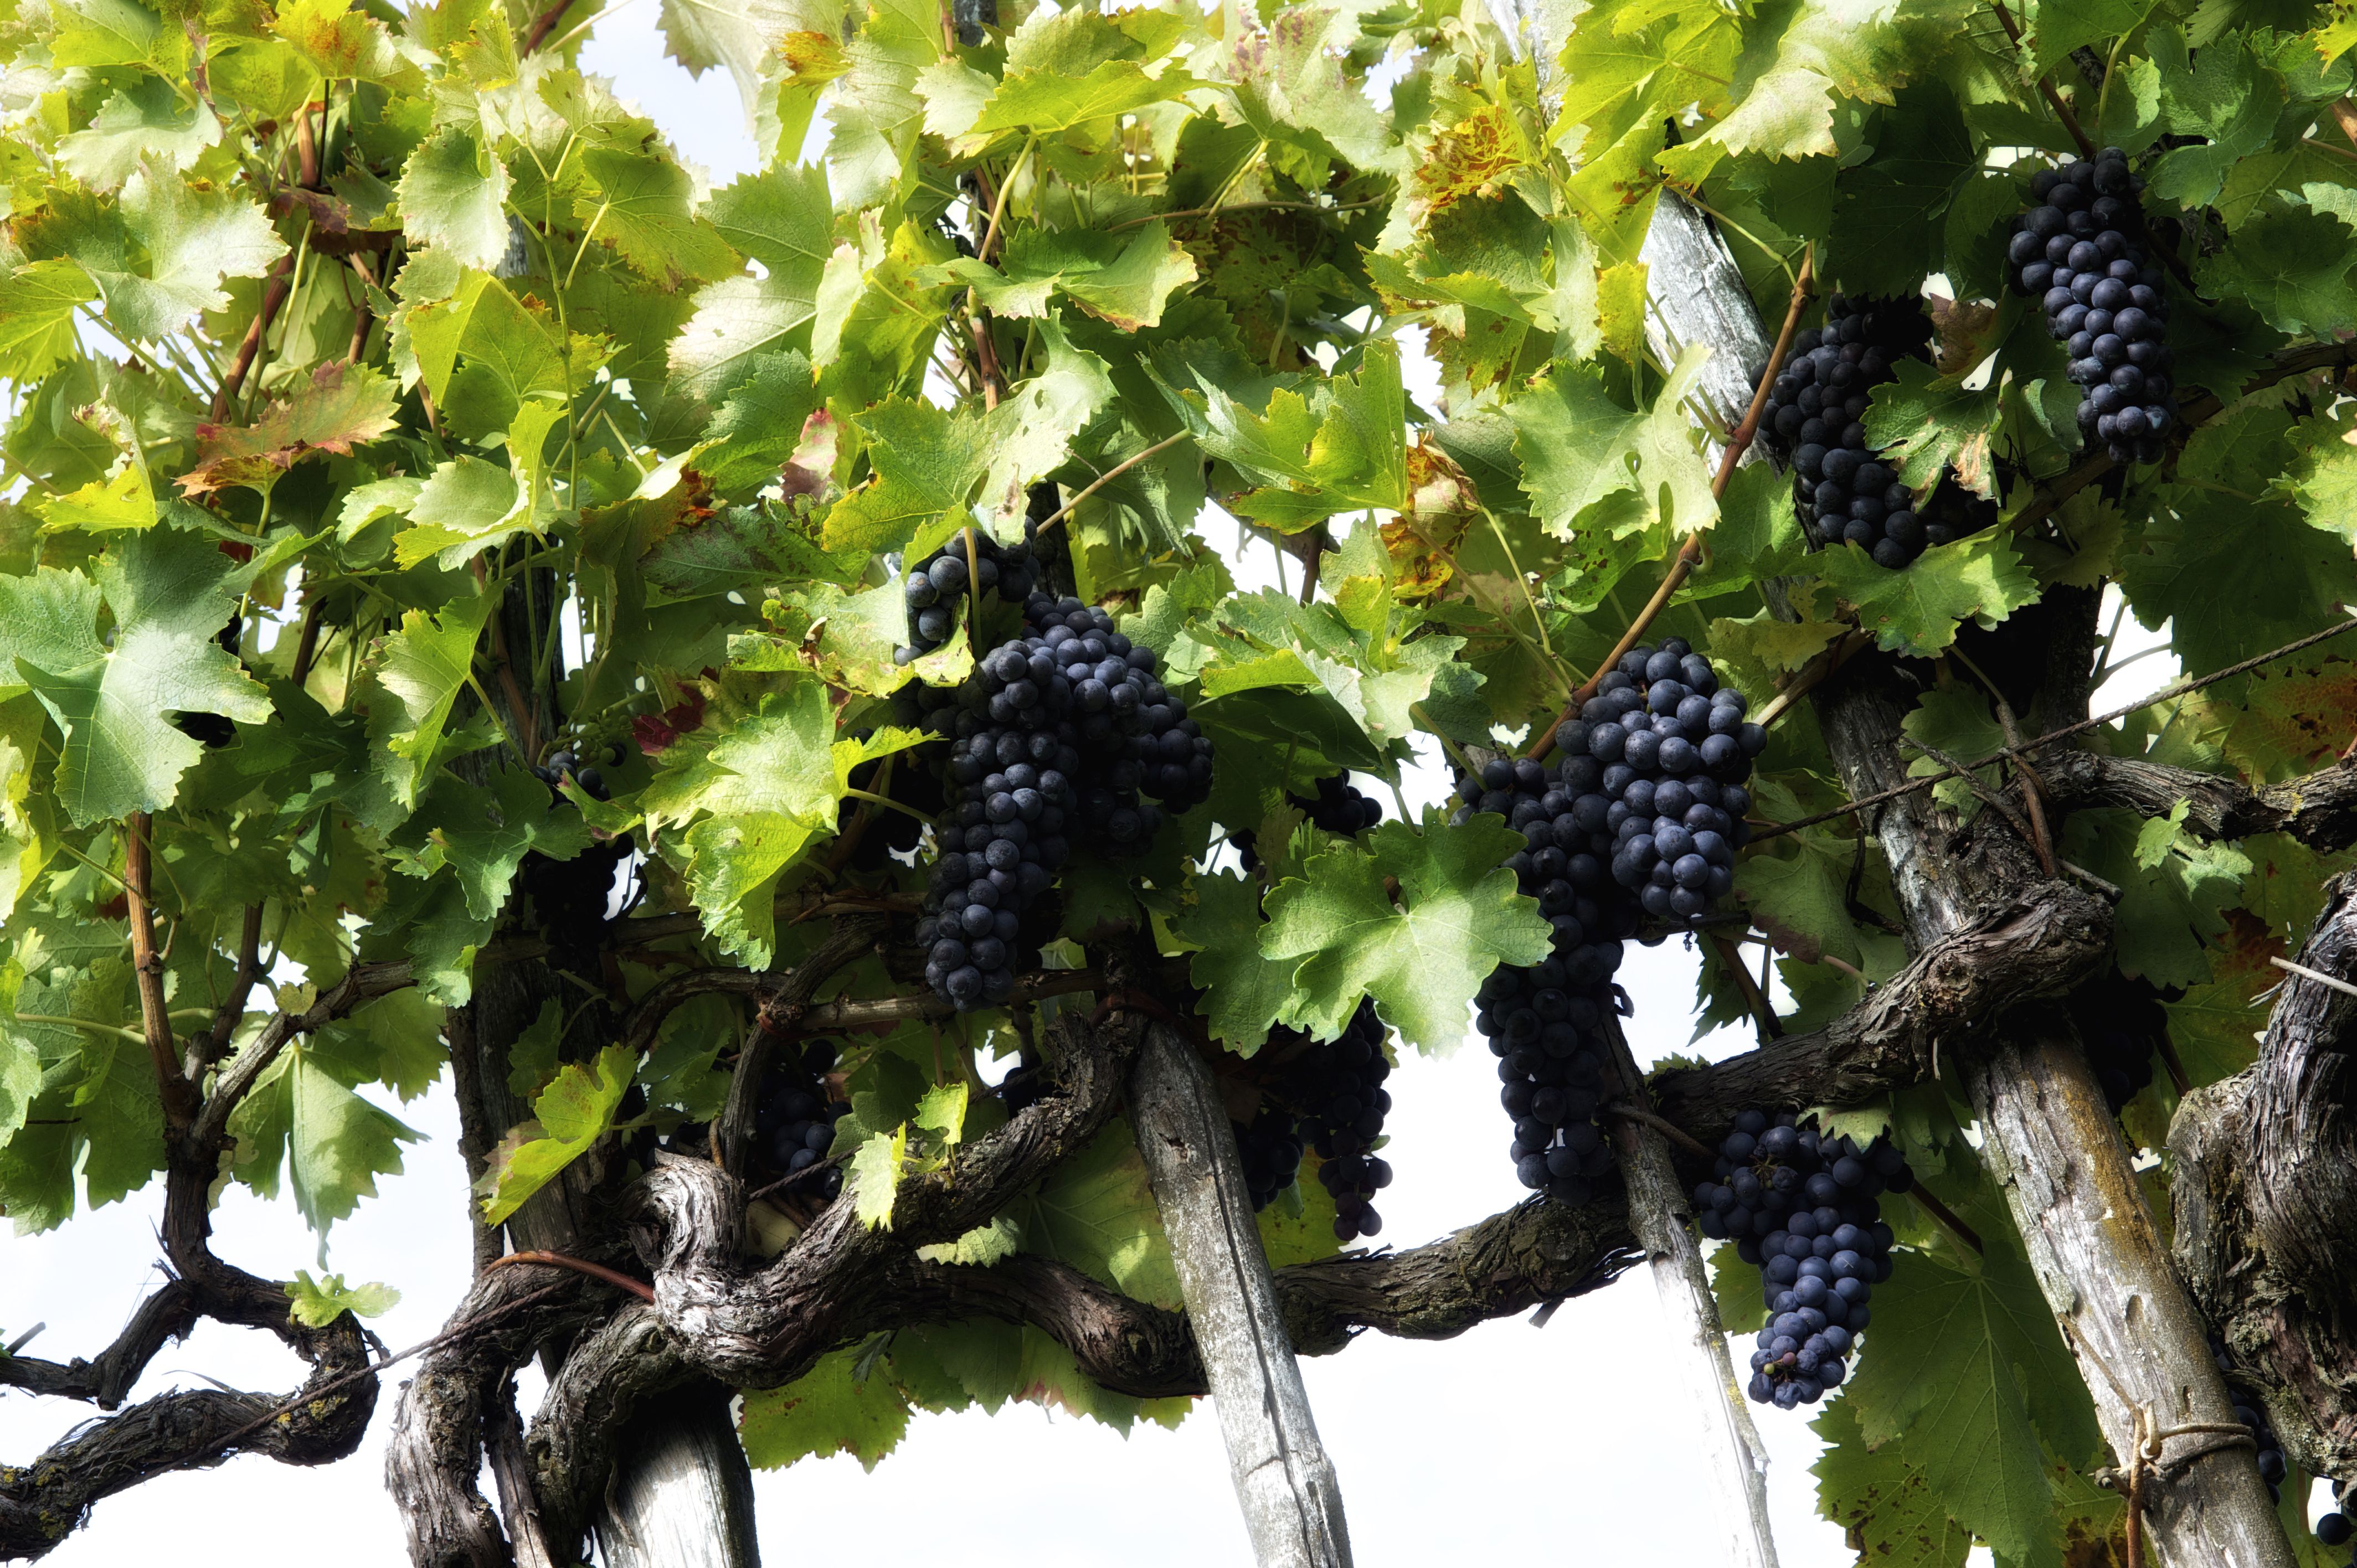 pigne d'uva pronte per la vendemmia a Montecarlo